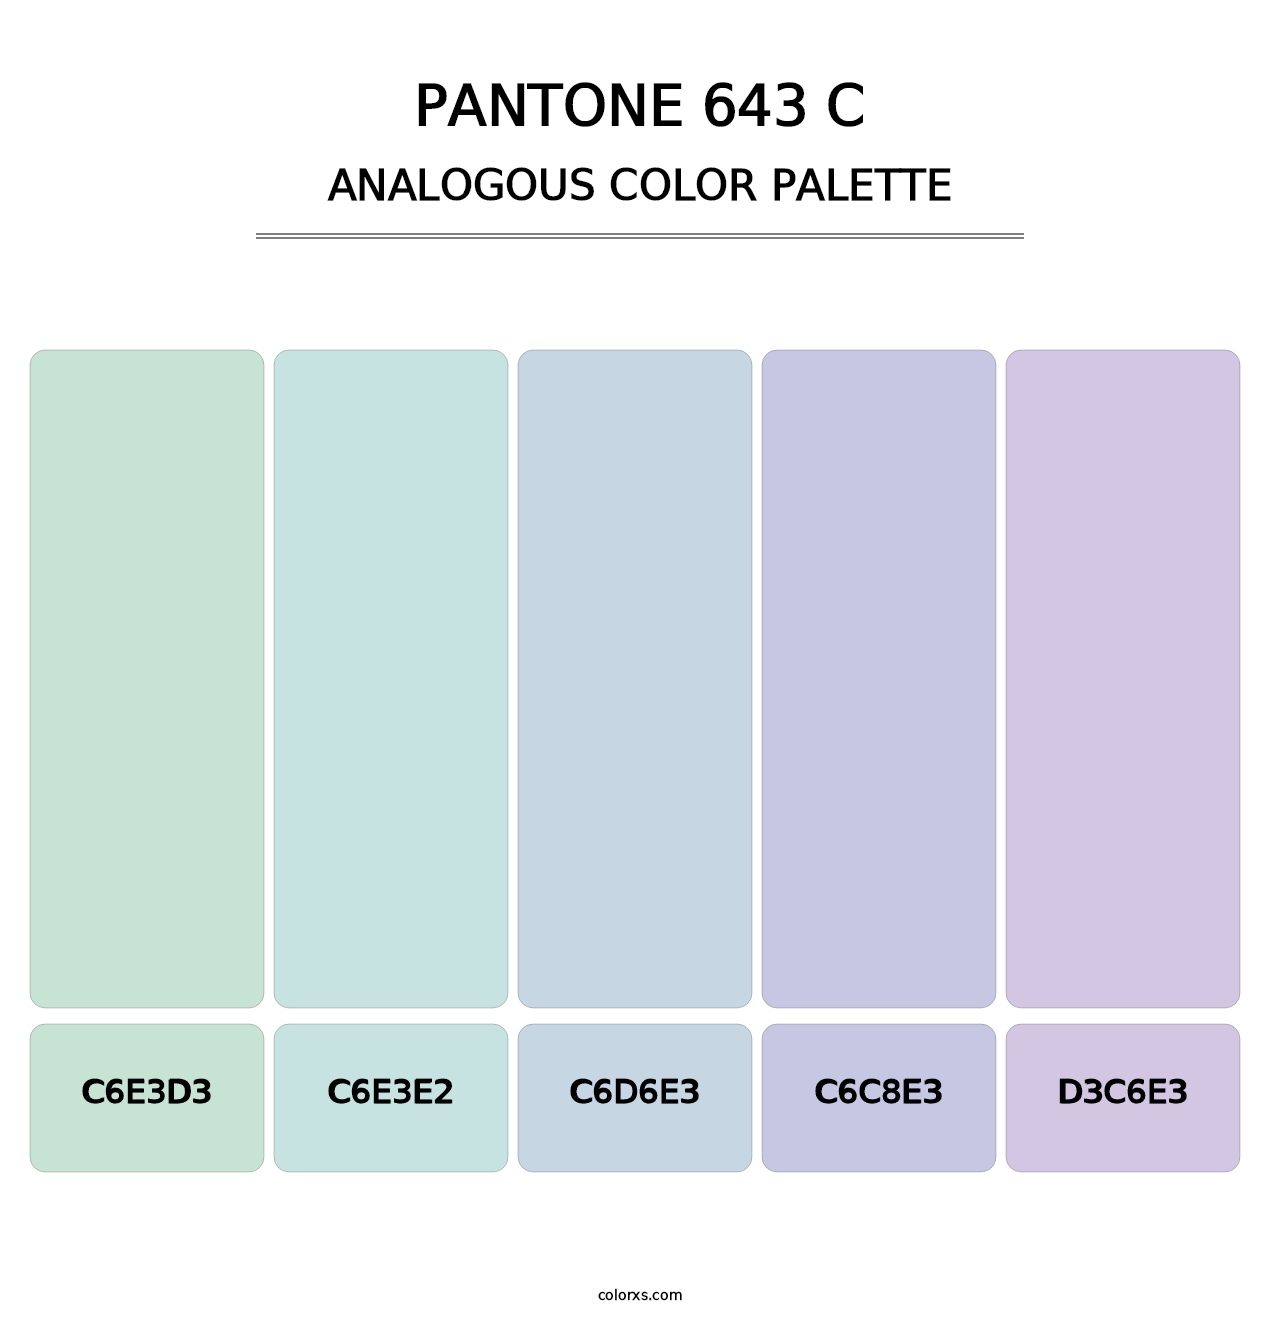 PANTONE 643 C - Analogous Color Palette